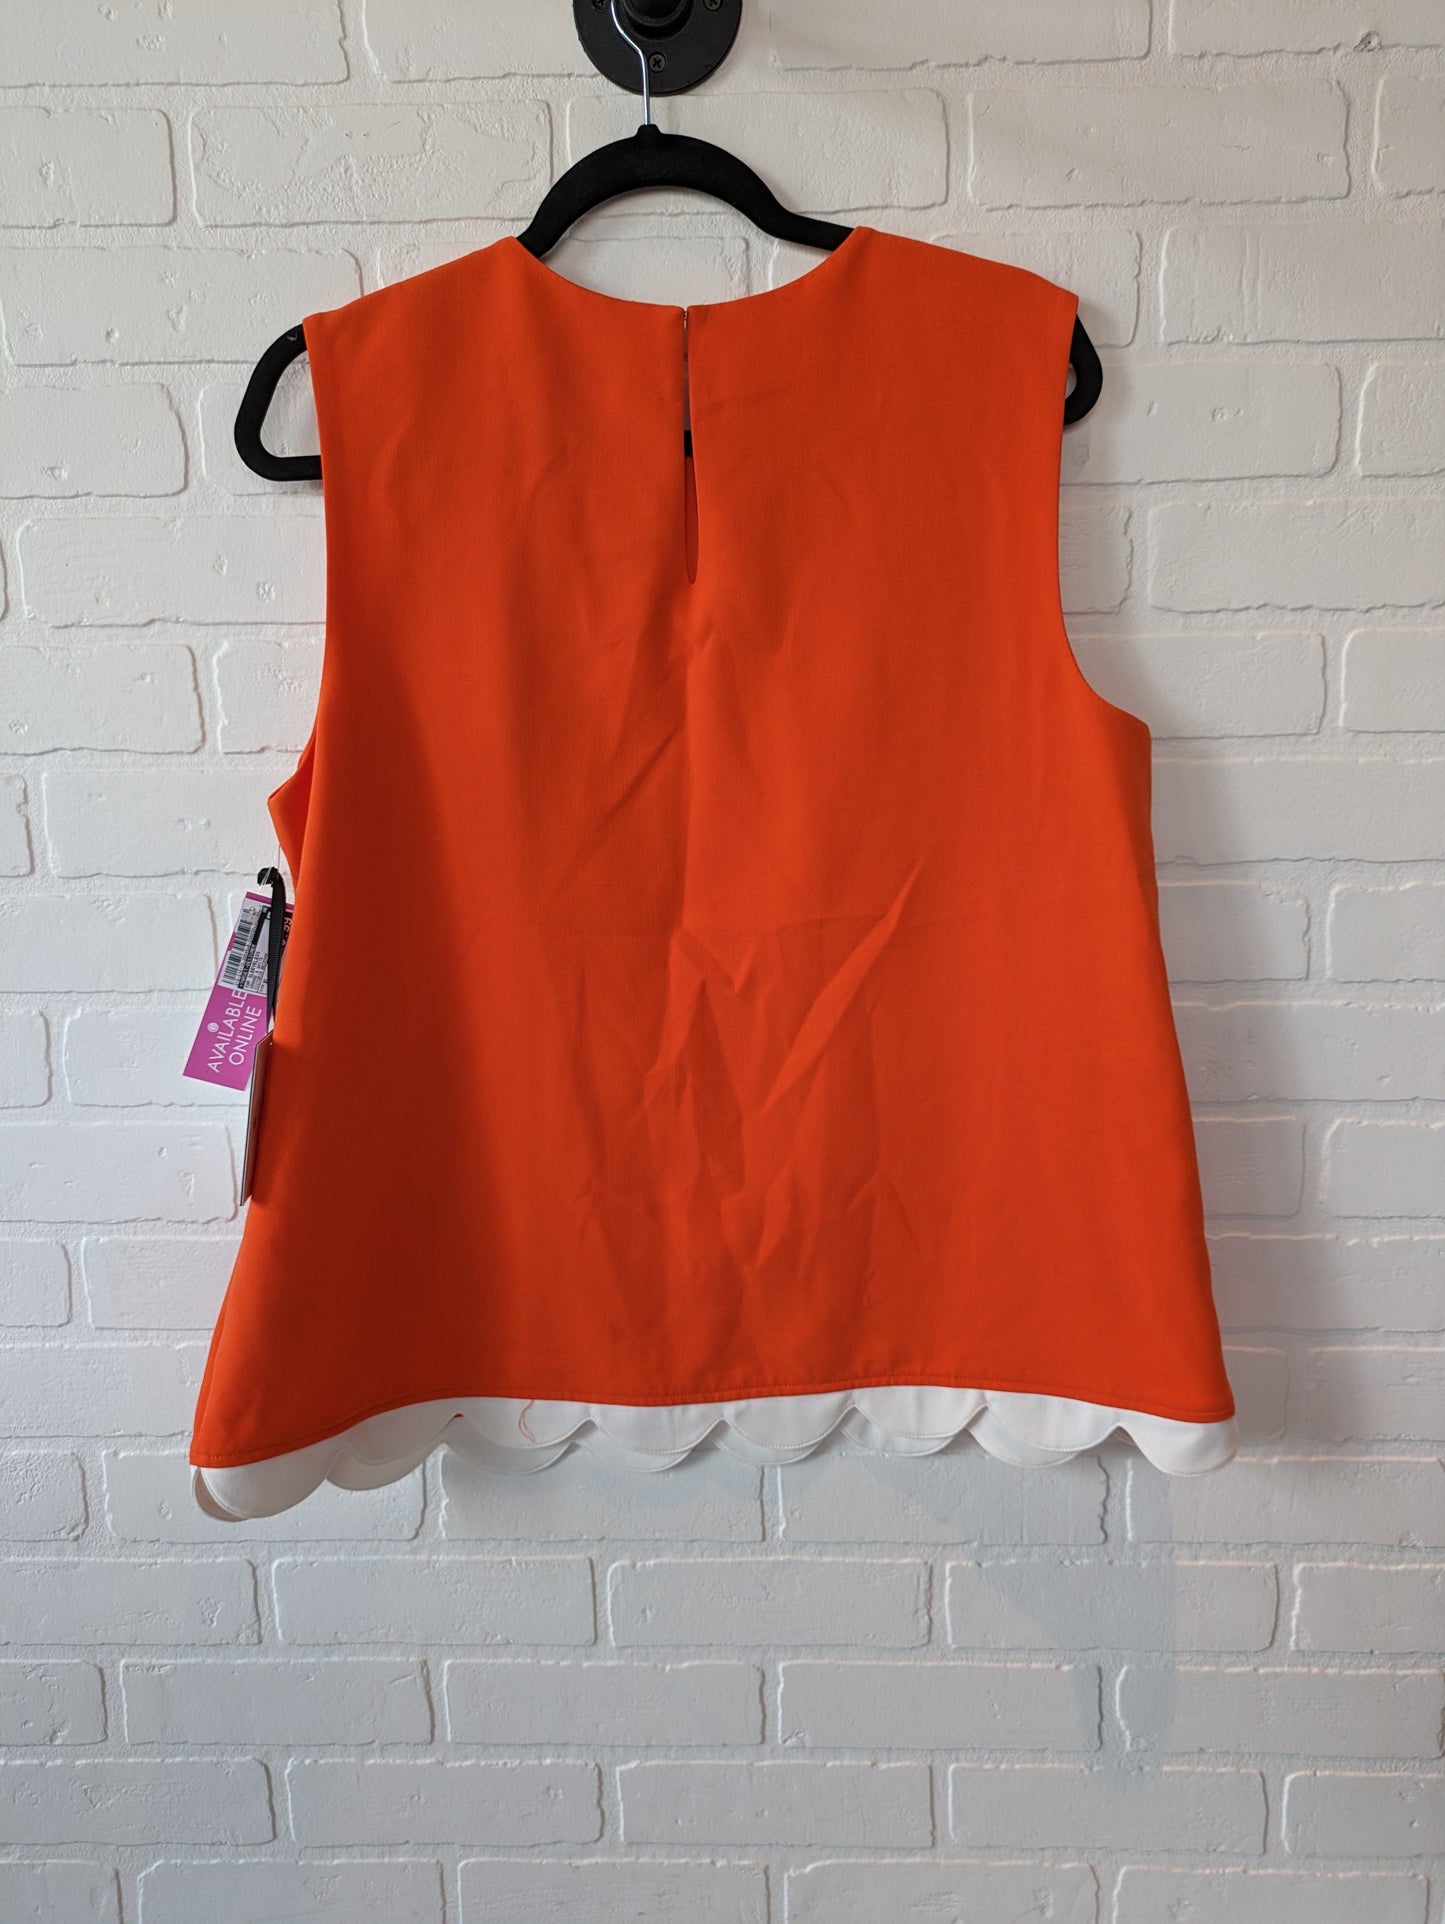 Orange & White Top Sleeveless Target-designer, Size Xl